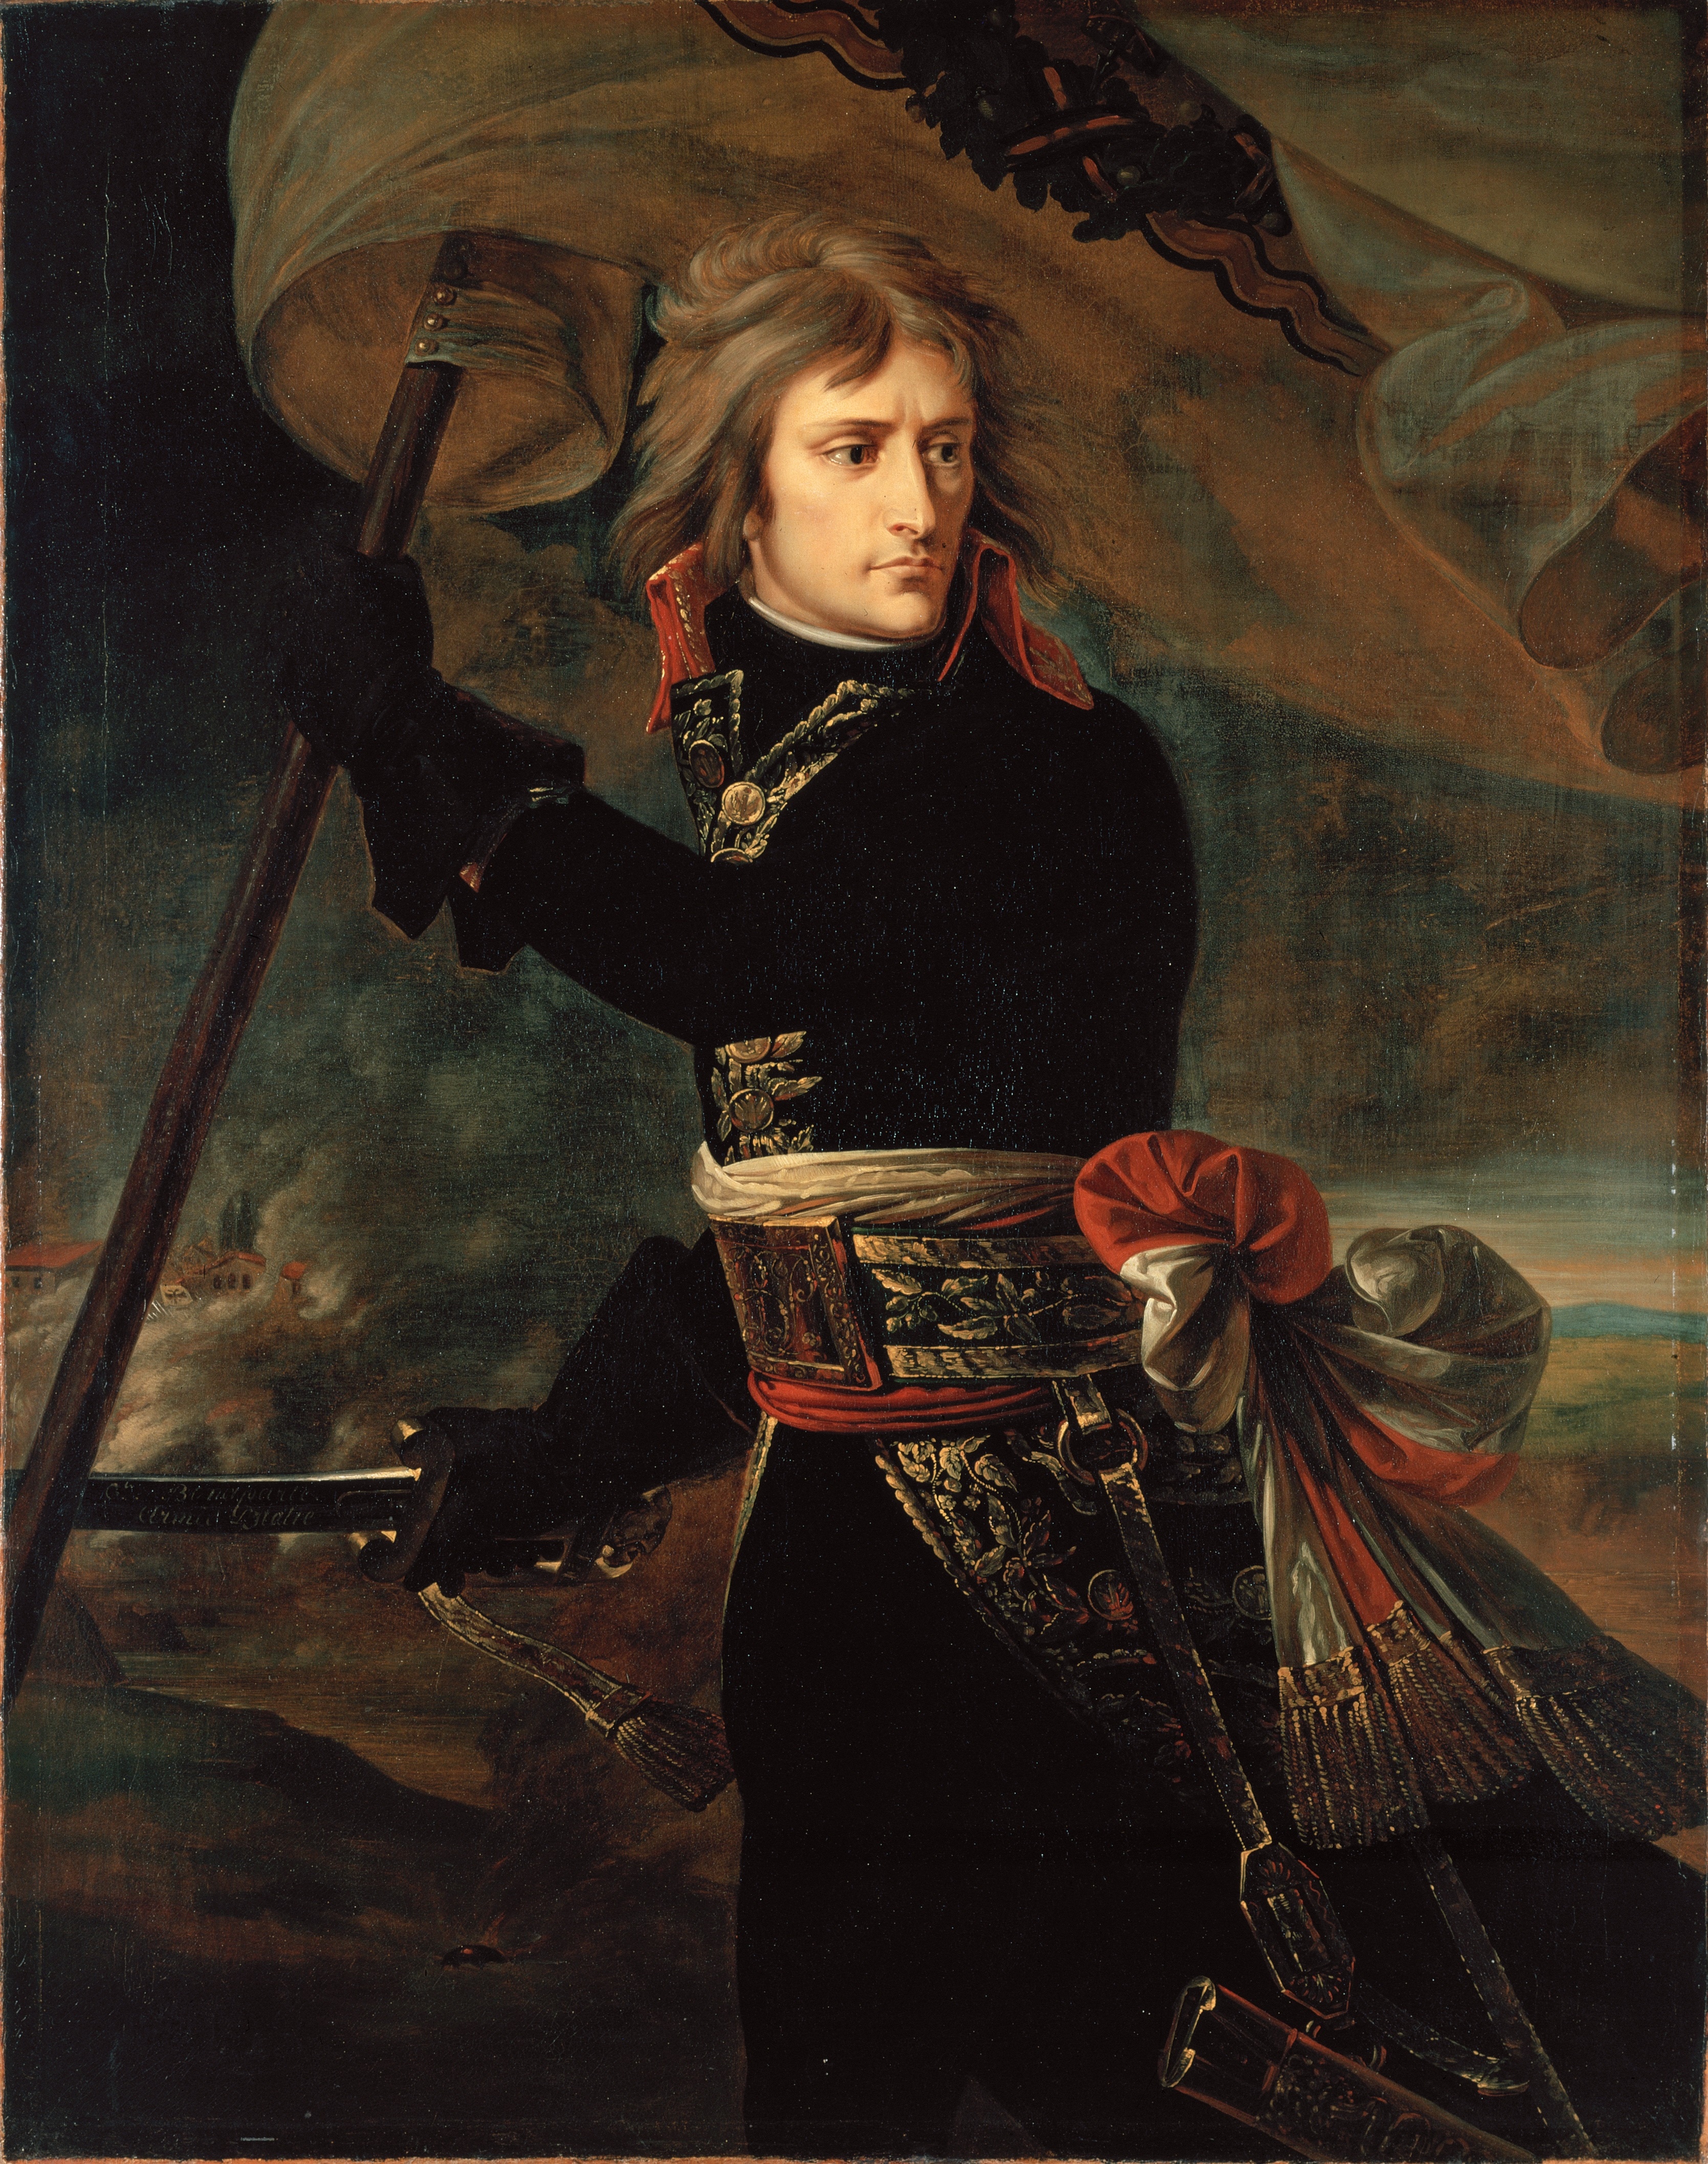 Ritratto del giovane Napoleone Bonaparte alla guida dell'armata d'Italia